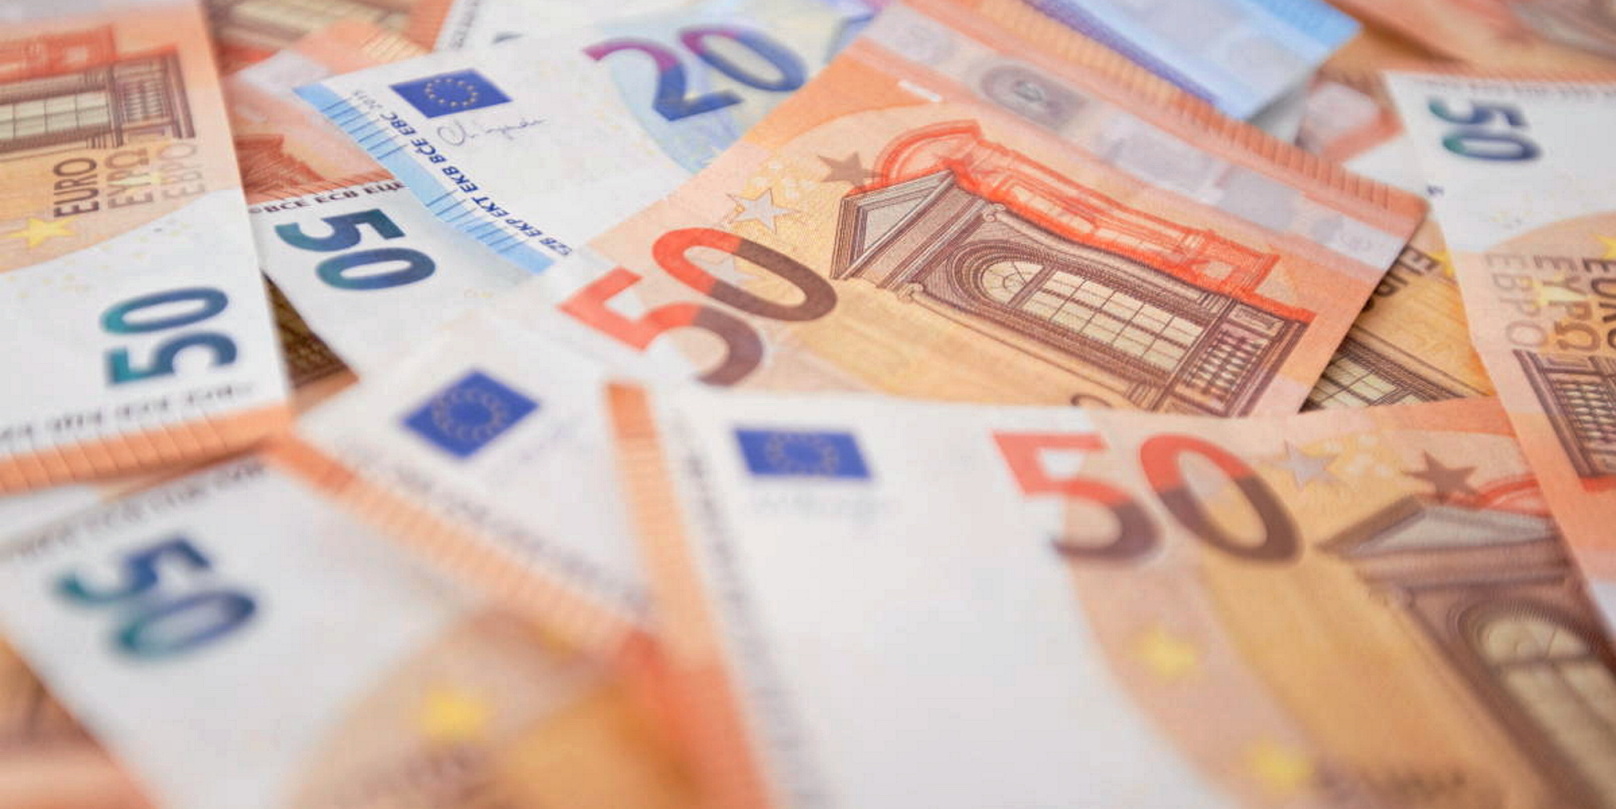 La BCE met fin à l'émission de billets de 500 euros